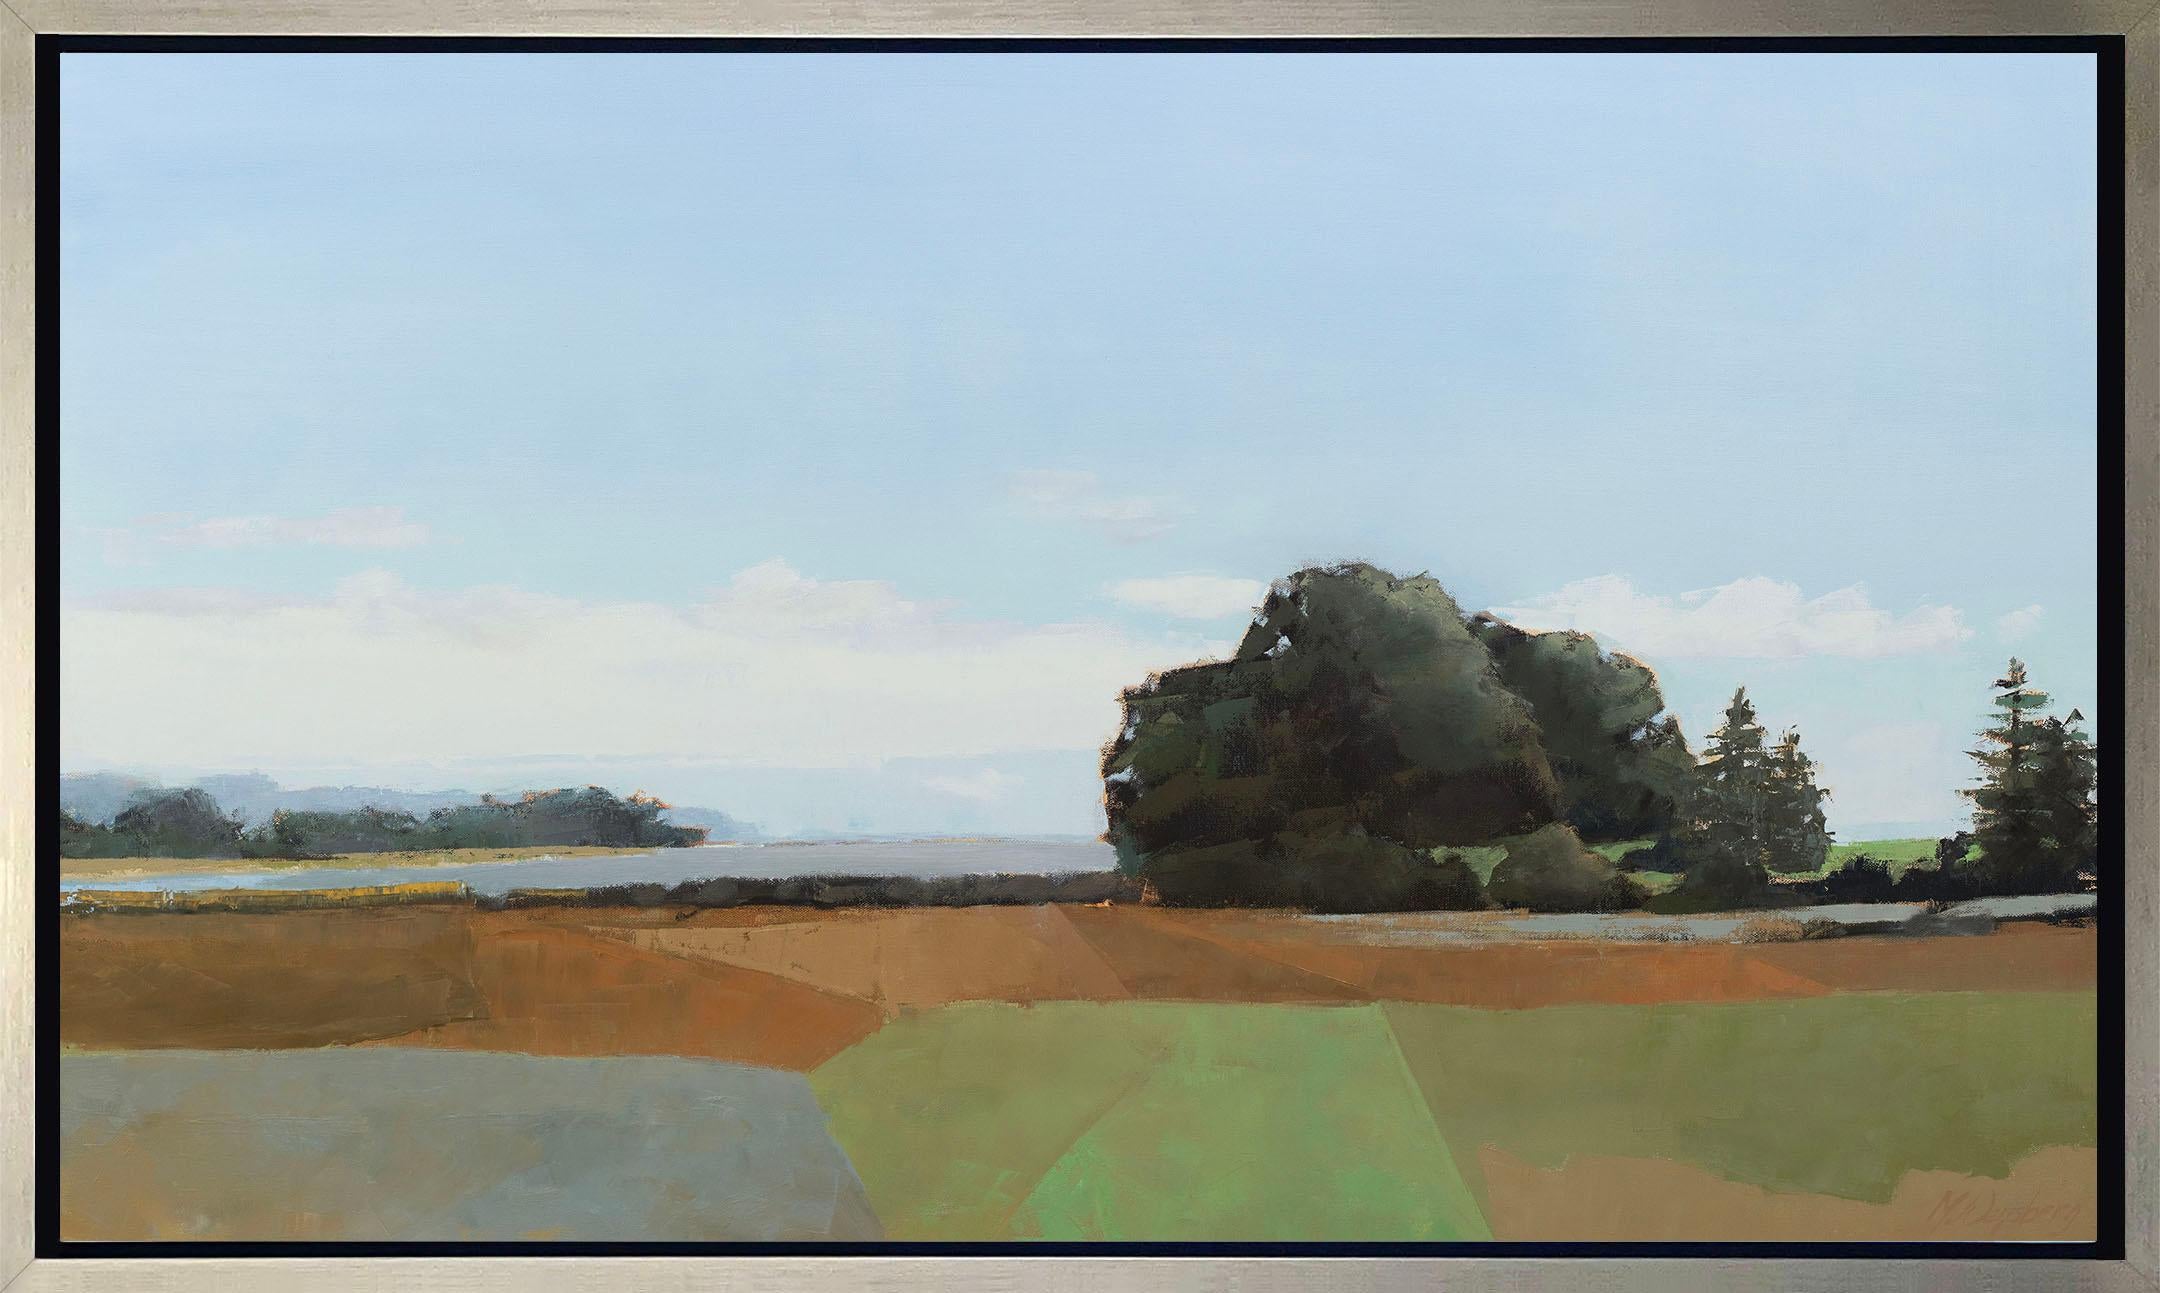 Diese limitierte Auflage des Giclée-Landschaftsdrucks von Molly Doe Wensberg hat eine Auflagenhöhe von 195. Es zeichnet sich durch eine kühle blaue und erdfarbene Palette aus und zeigt eine Landschaftsszene mit üppigem Laub und wogenden Feldern